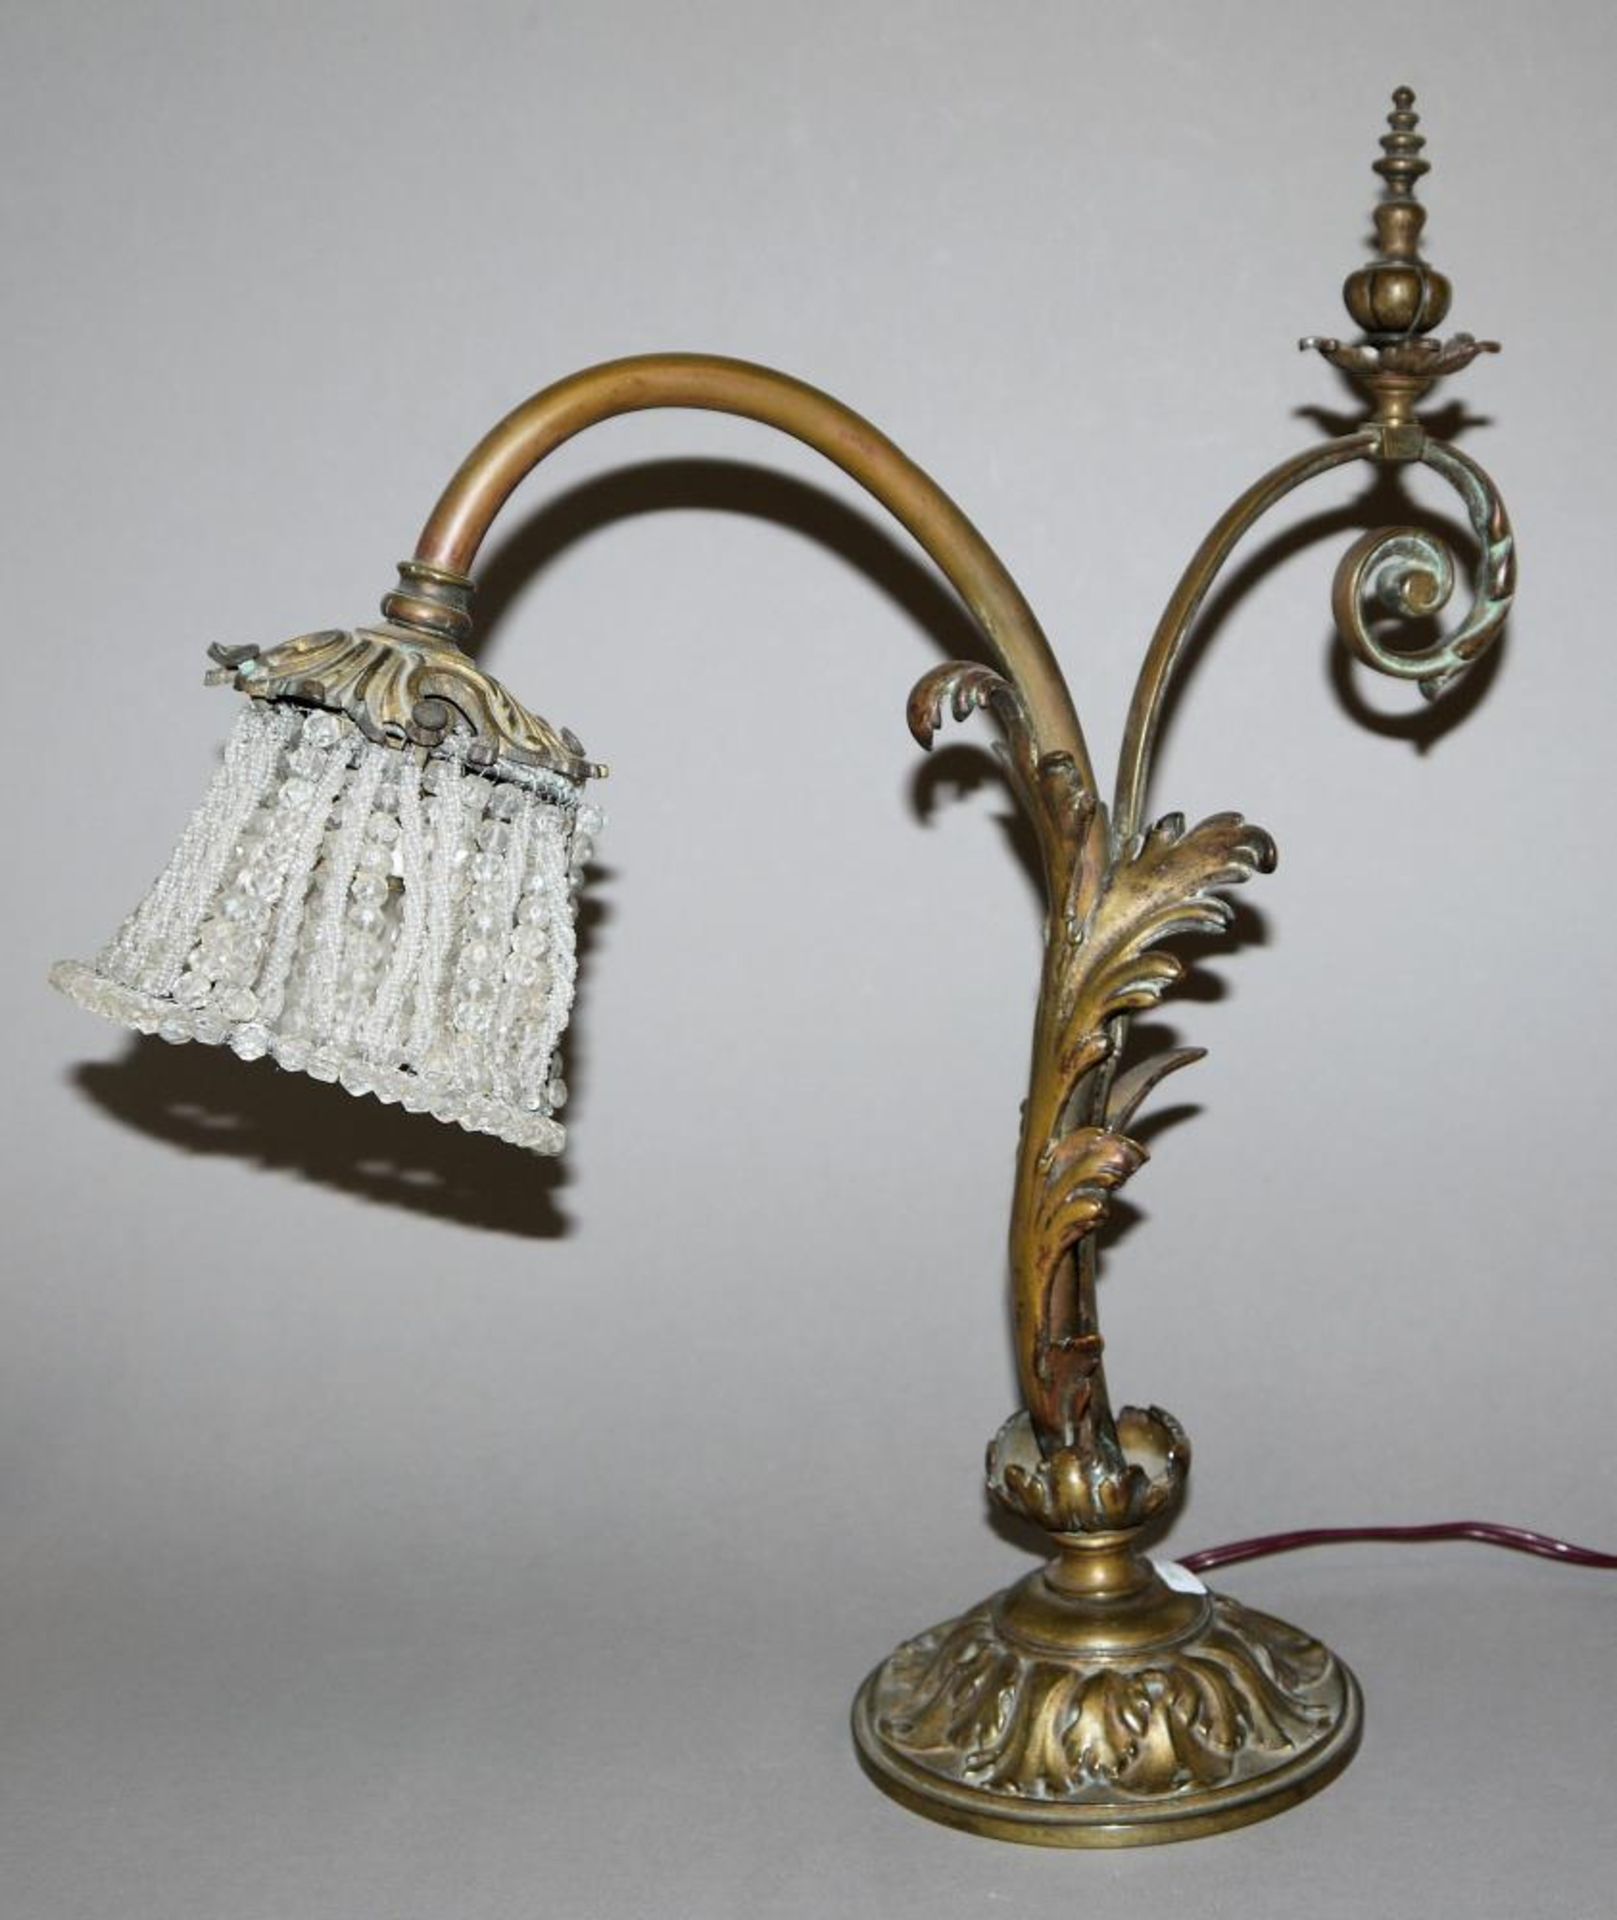 Frühe elektrische Tischlampe um 1880/90 Lampenfuß aus Bronze mit Akanthusblatt-Dekor, der